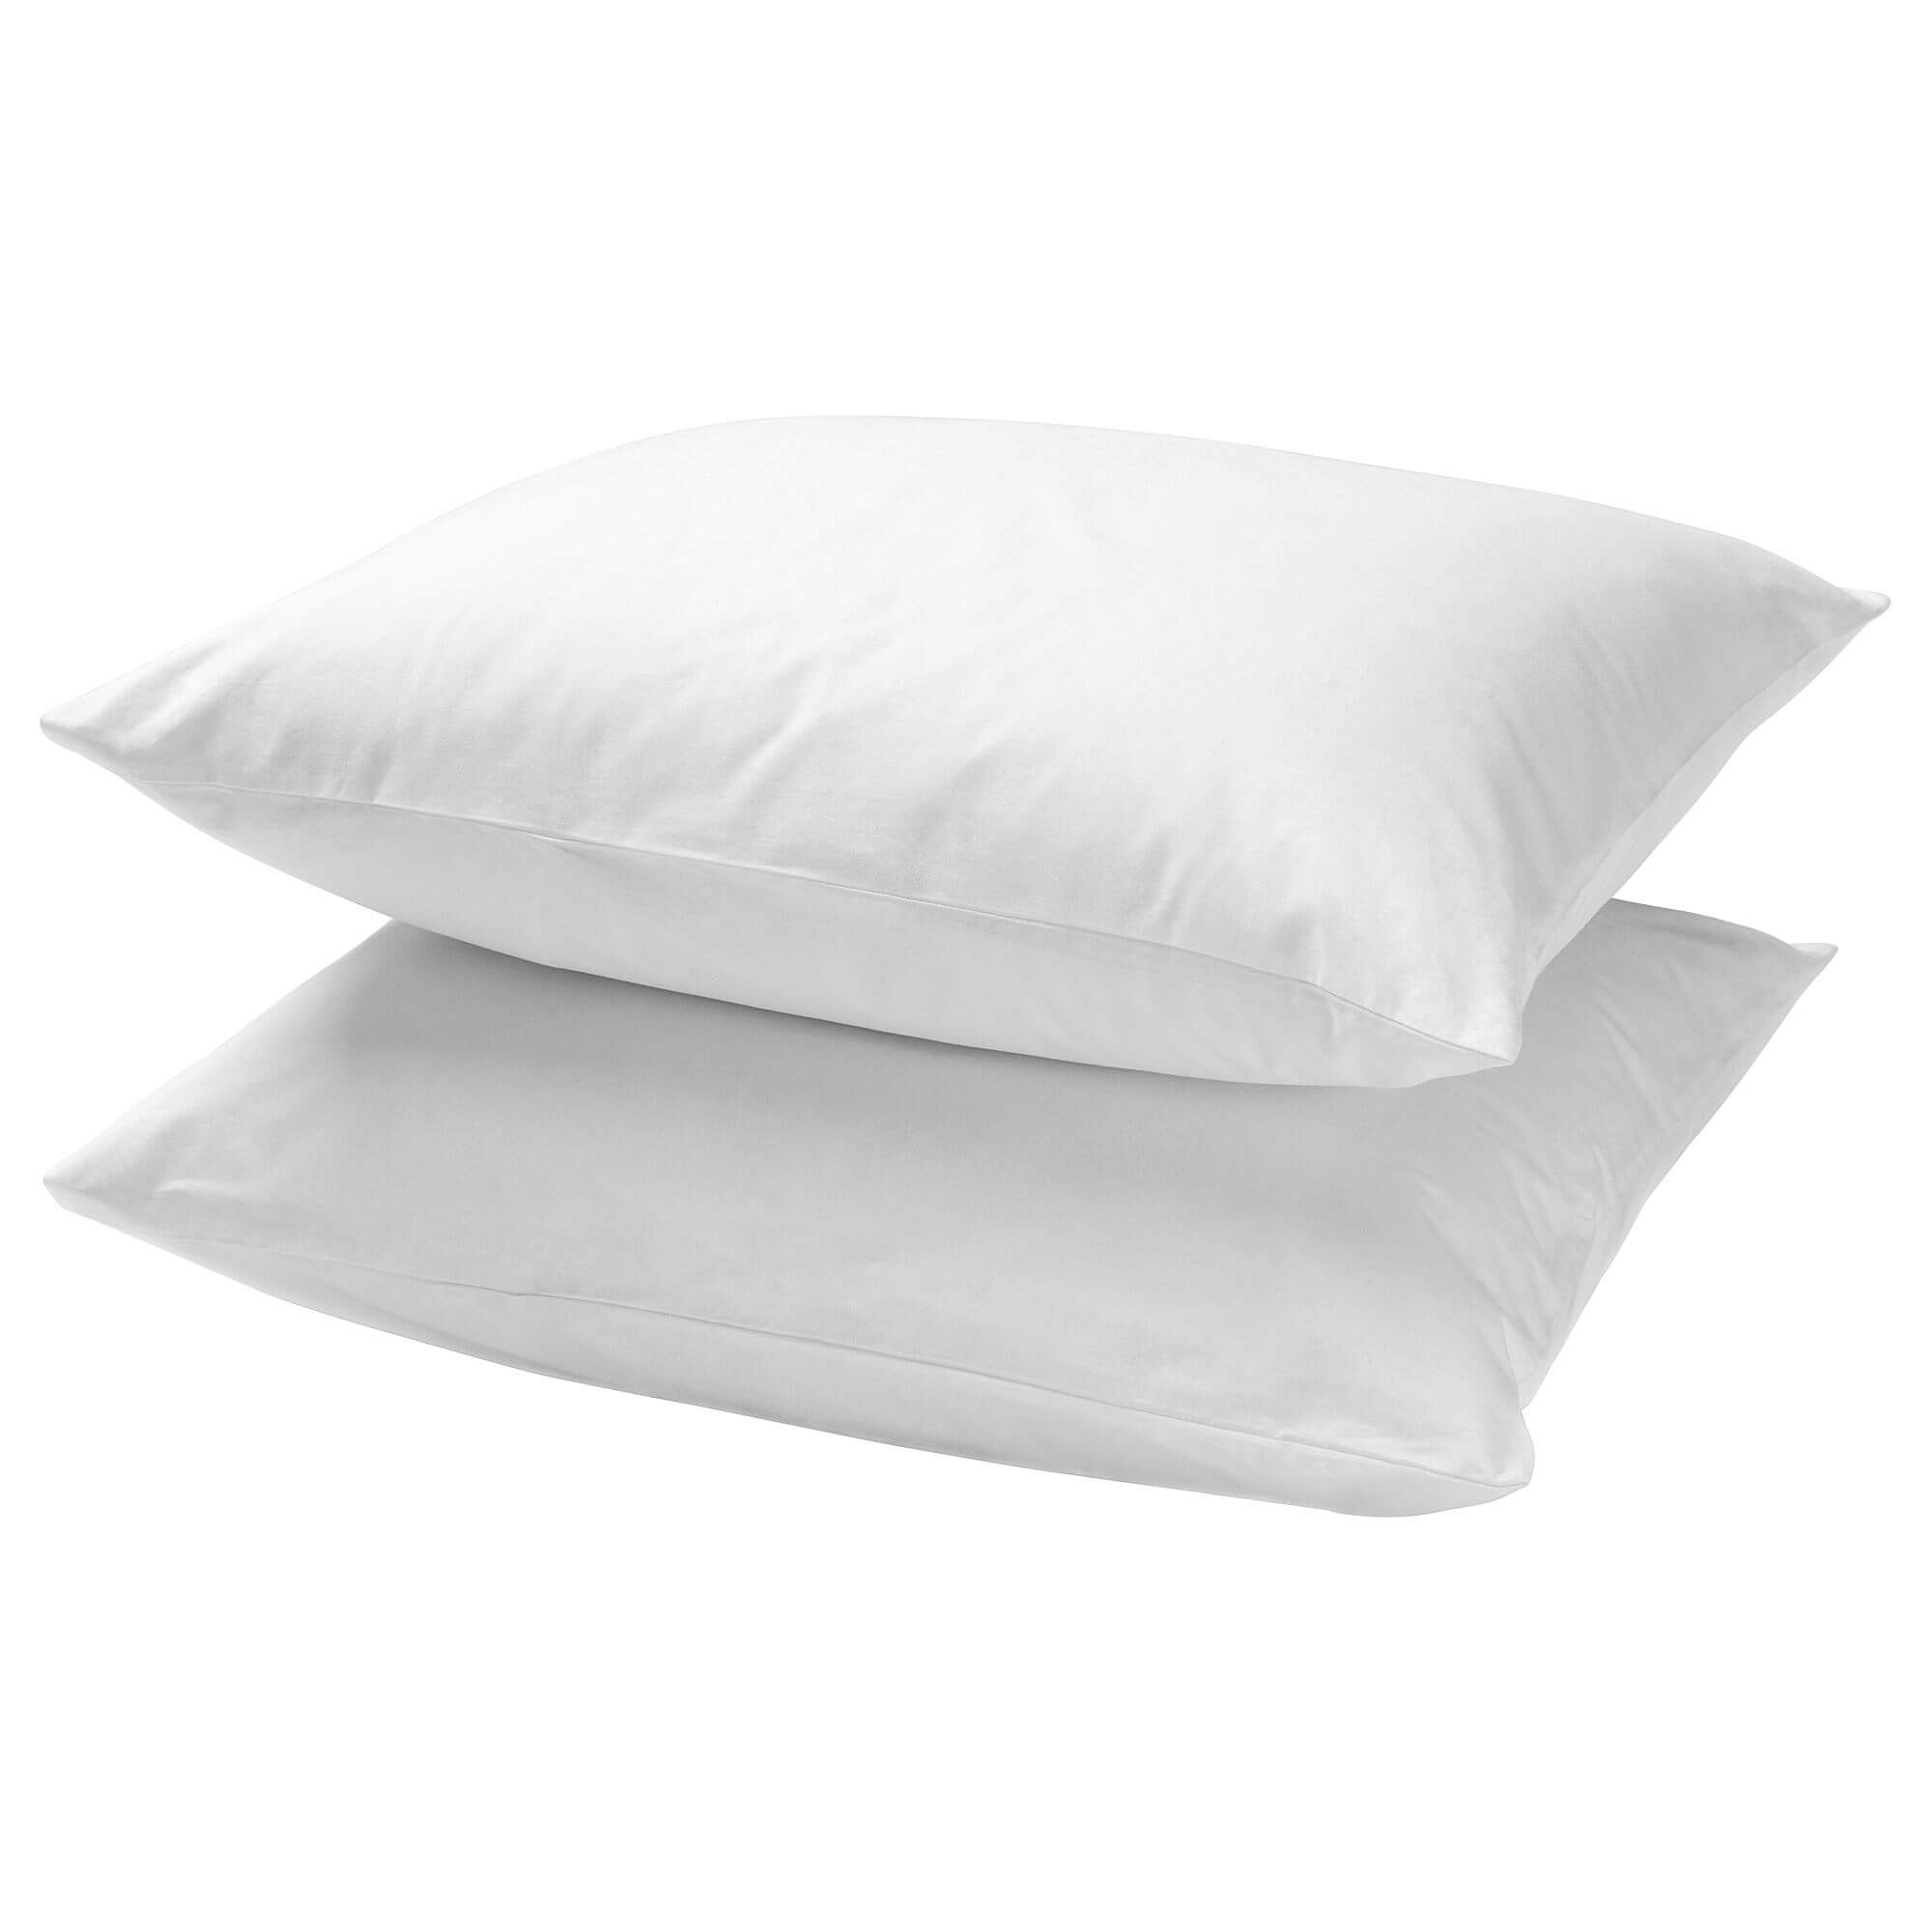 комплект постельного белья ikea dvala 2 предмета белый Комплект наволочек Ikea Dvala, 2 предмета, 50x60 см, белый